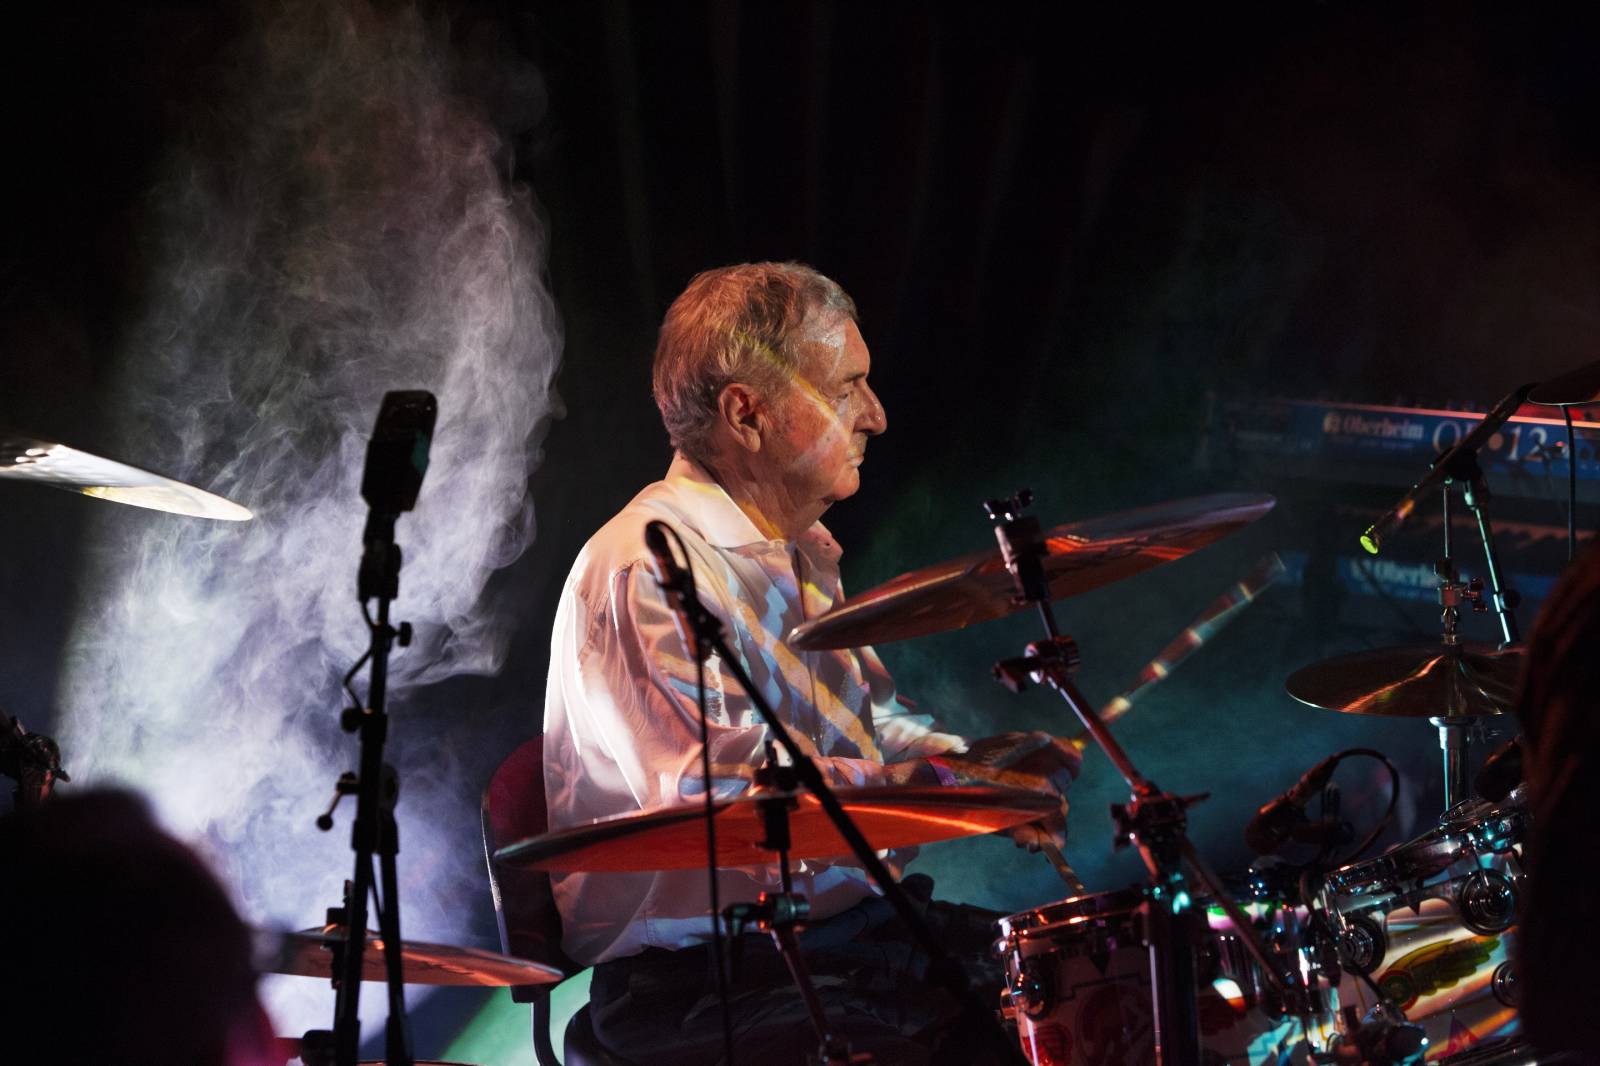 Nick Mason zahraje v Praze hity legendárních Pink Floyd